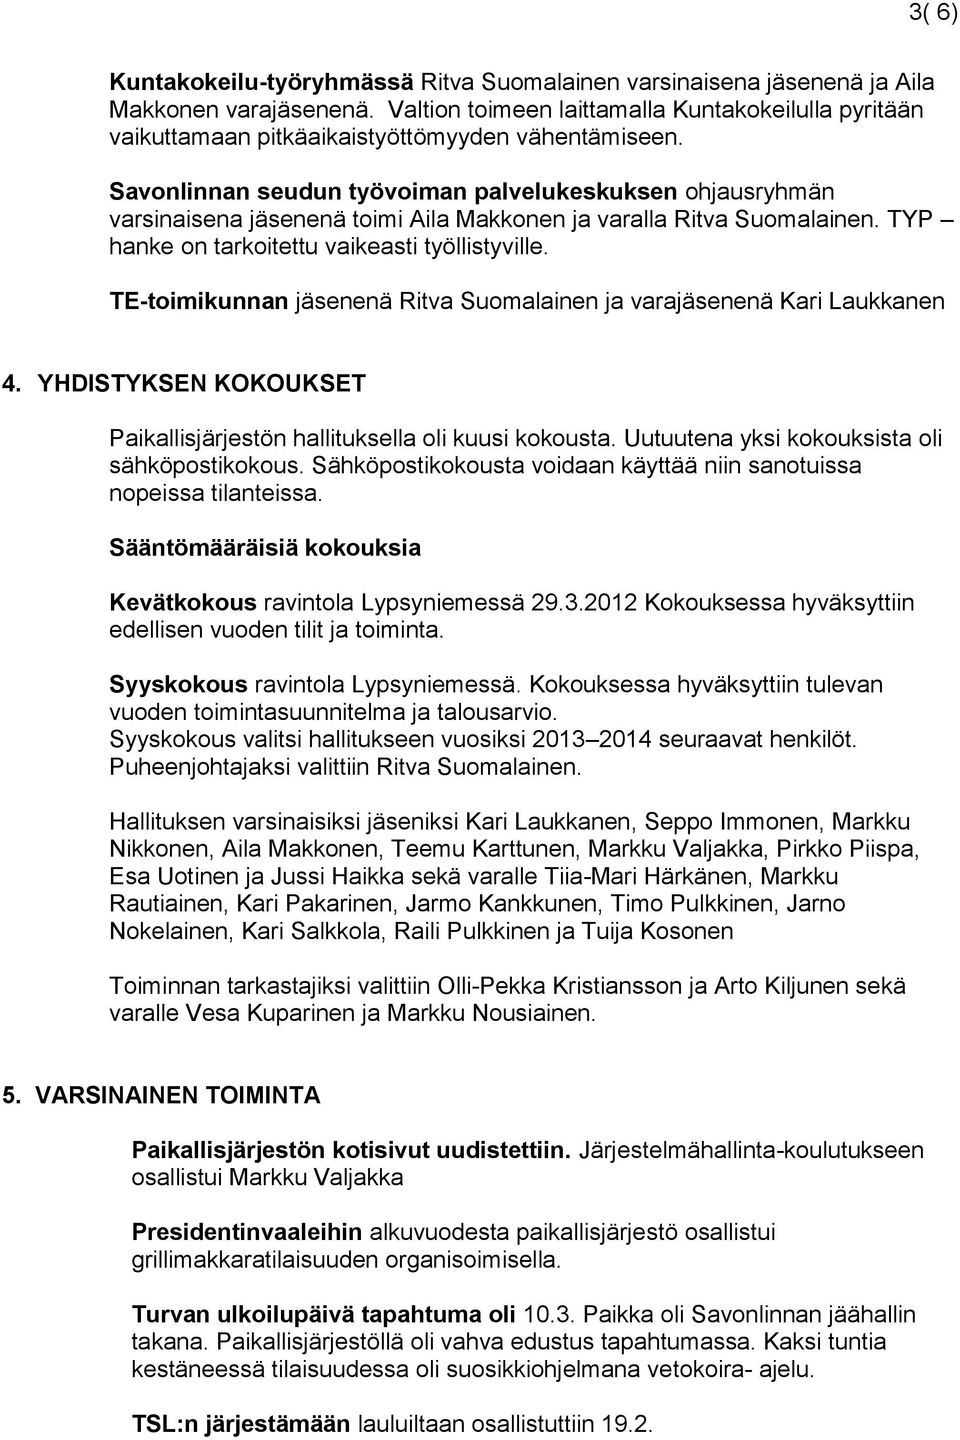 Savonlinnan seudun työvoiman palvelukeskuksen ohjausryhmän varsinaisena jäsenenä toimi Aila Makkonen ja varalla Ritva Suomalainen. TYP hanke on tarkoitettu vaikeasti työllistyville.